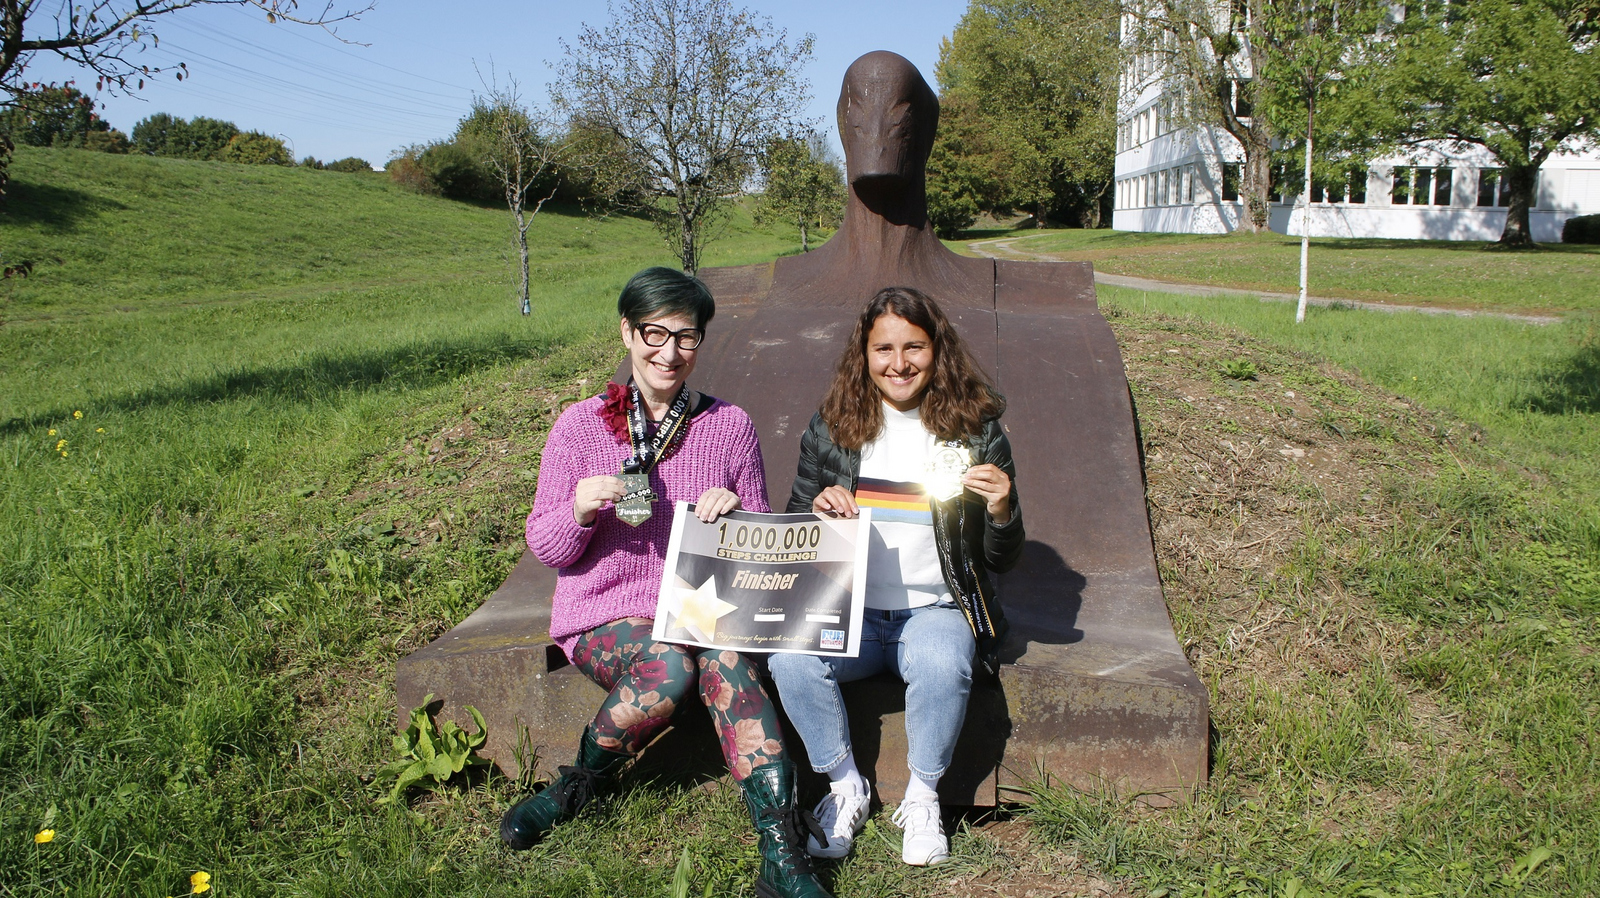 Cornelia Herde und Stella Schneider (von links) sitzen auf der liegenden Eisenskulptur an der Hochschule und halten ihre Finisher-Medaillen und eine Urkunde in die Kamera